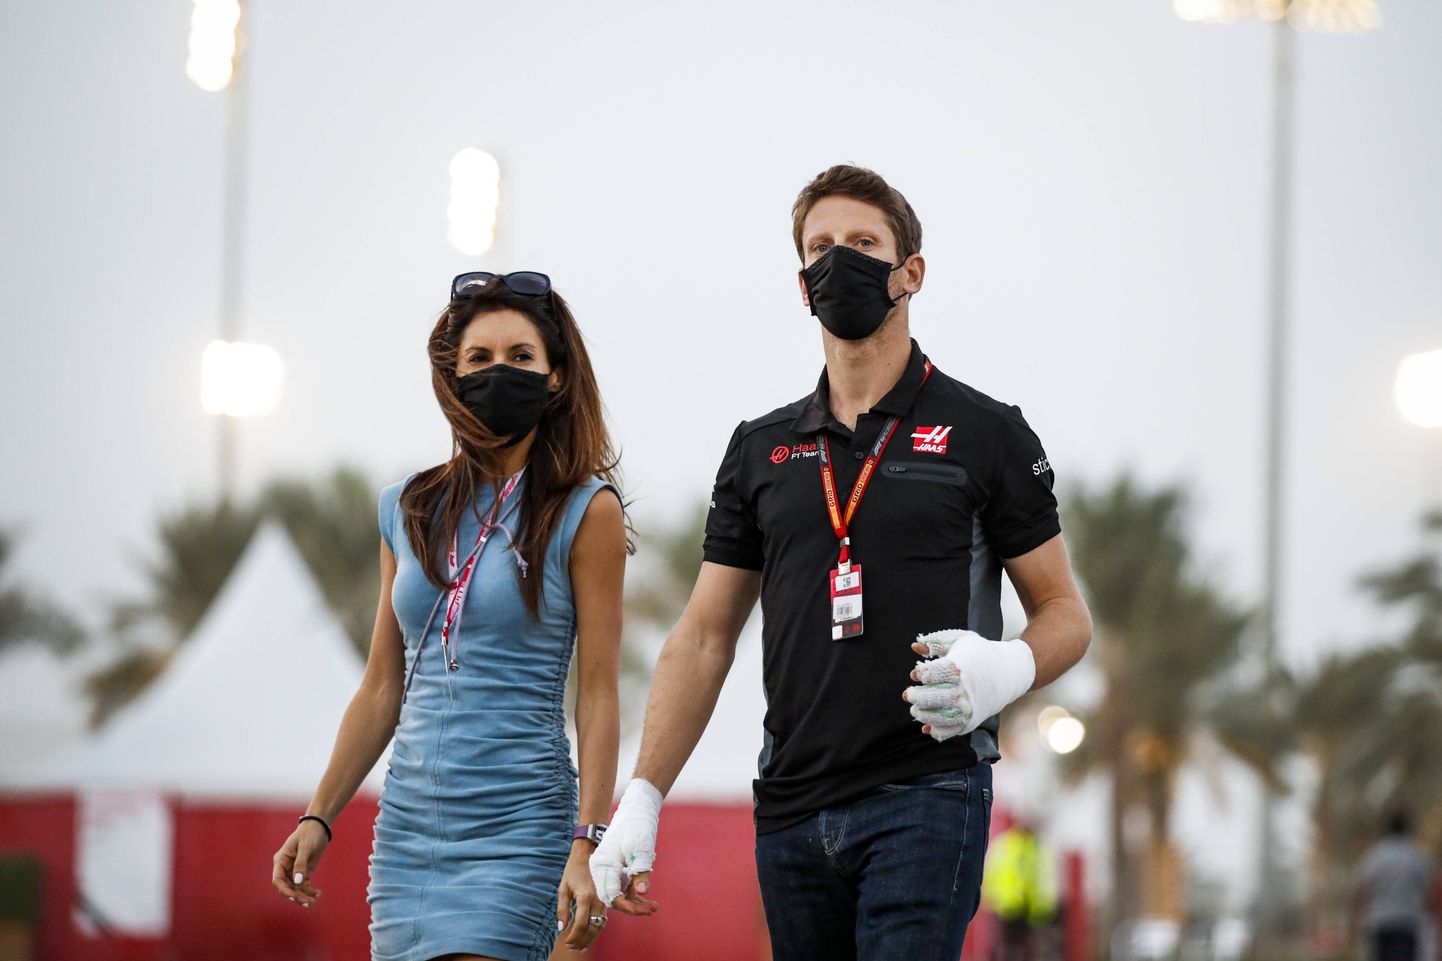 Vormelisõitja Romain Grosjean koos abikaasa Marion Jolles Grosjeaniga eelmisel nädalavahetusel Bahreinis.